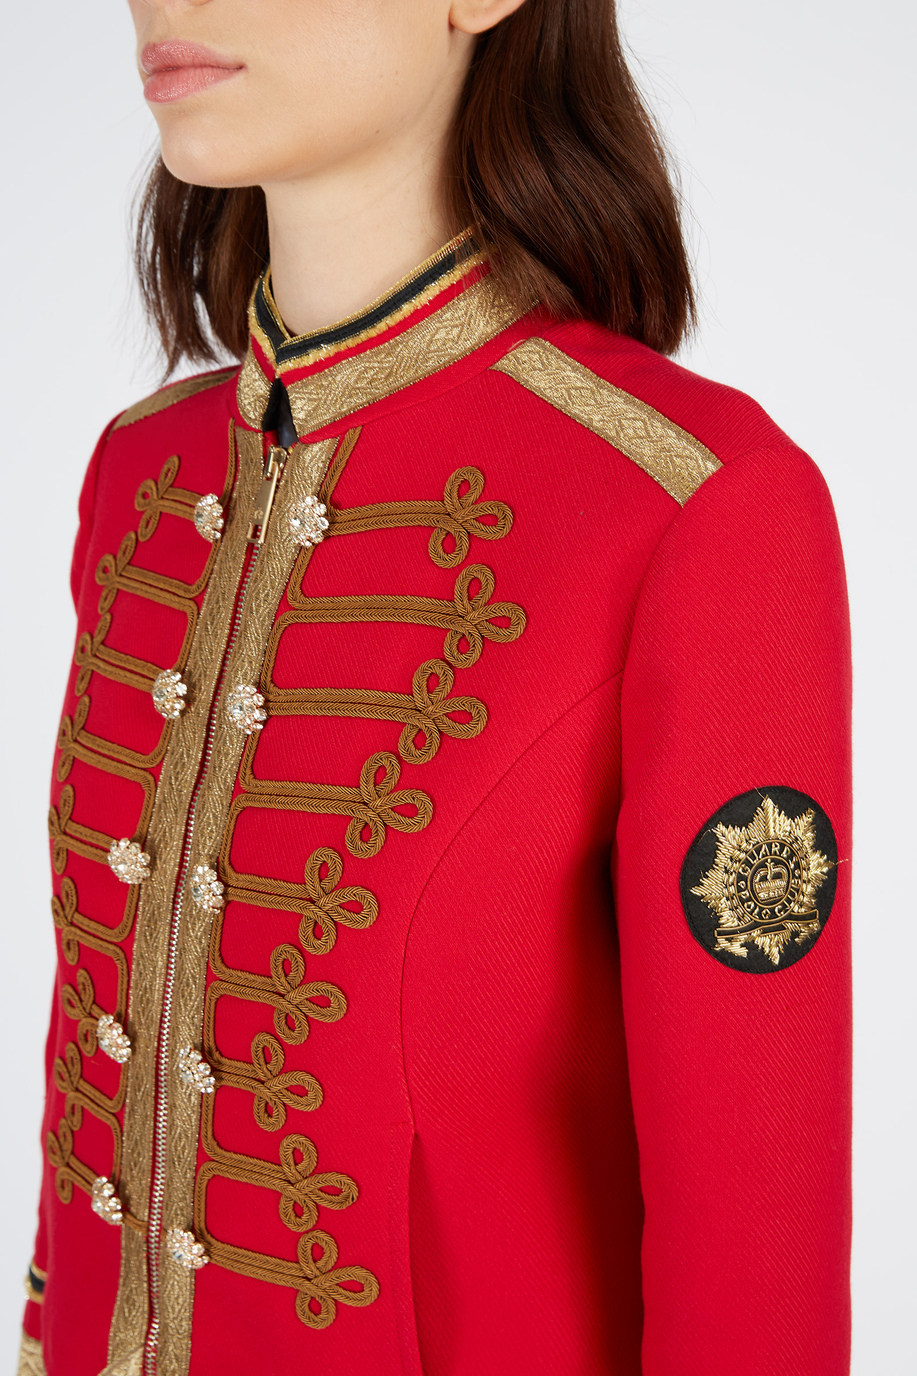 Veste blazer simple Guards femme coupe classique - Tenues élégantes pour elle | La Martina - Official Online Shop